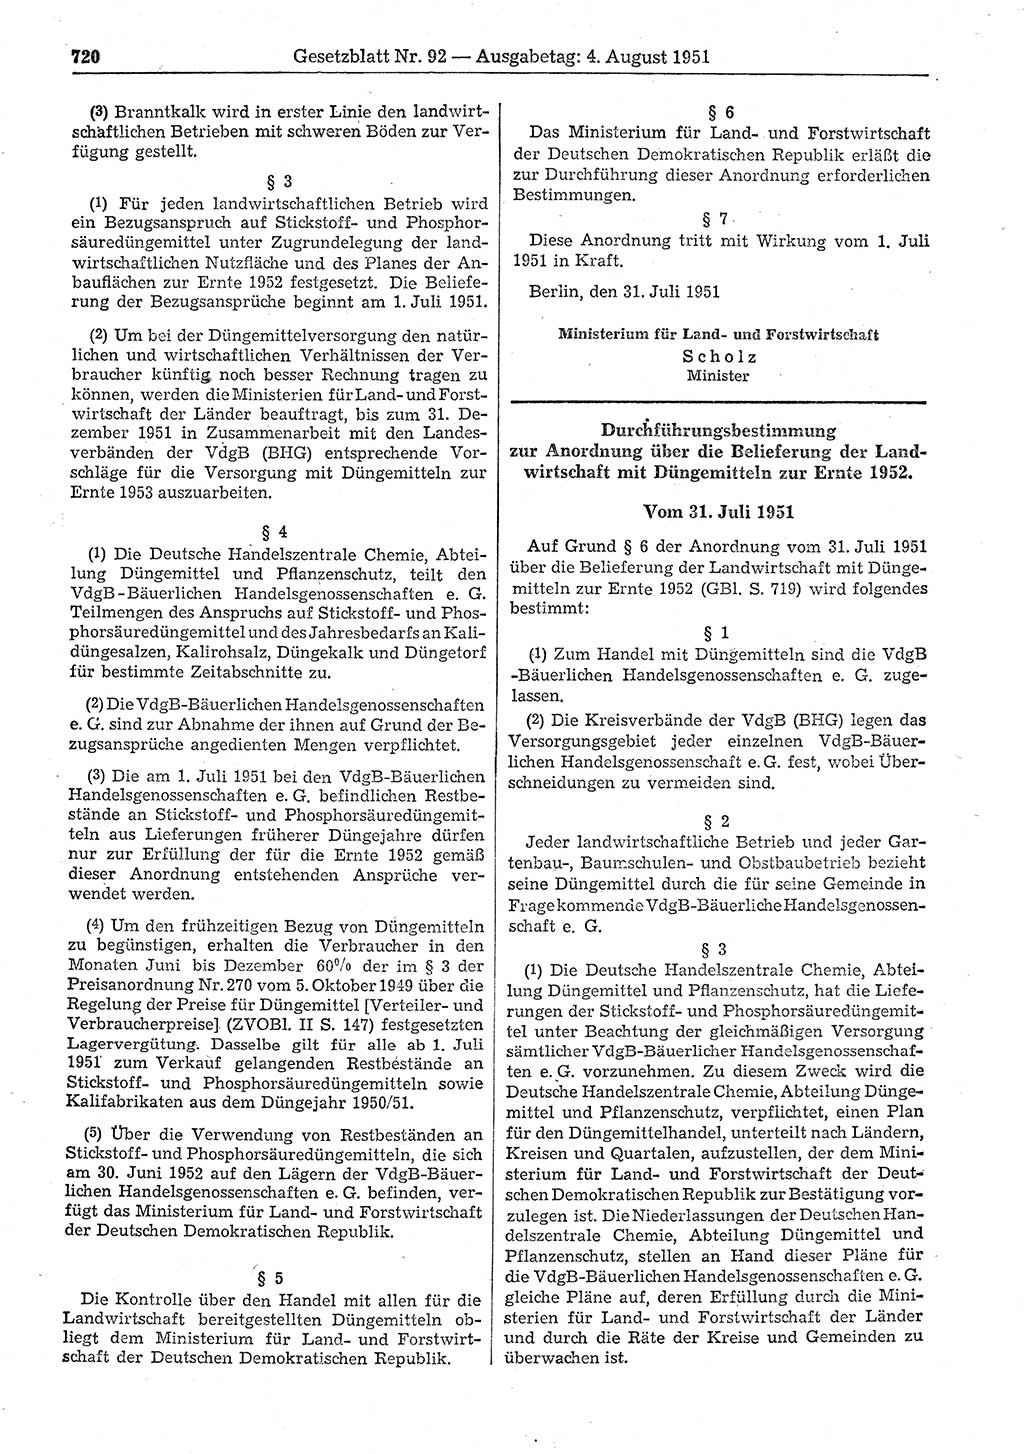 Gesetzblatt (GBl.) der Deutschen Demokratischen Republik (DDR) 1951, Seite 720 (GBl. DDR 1951, S. 720)